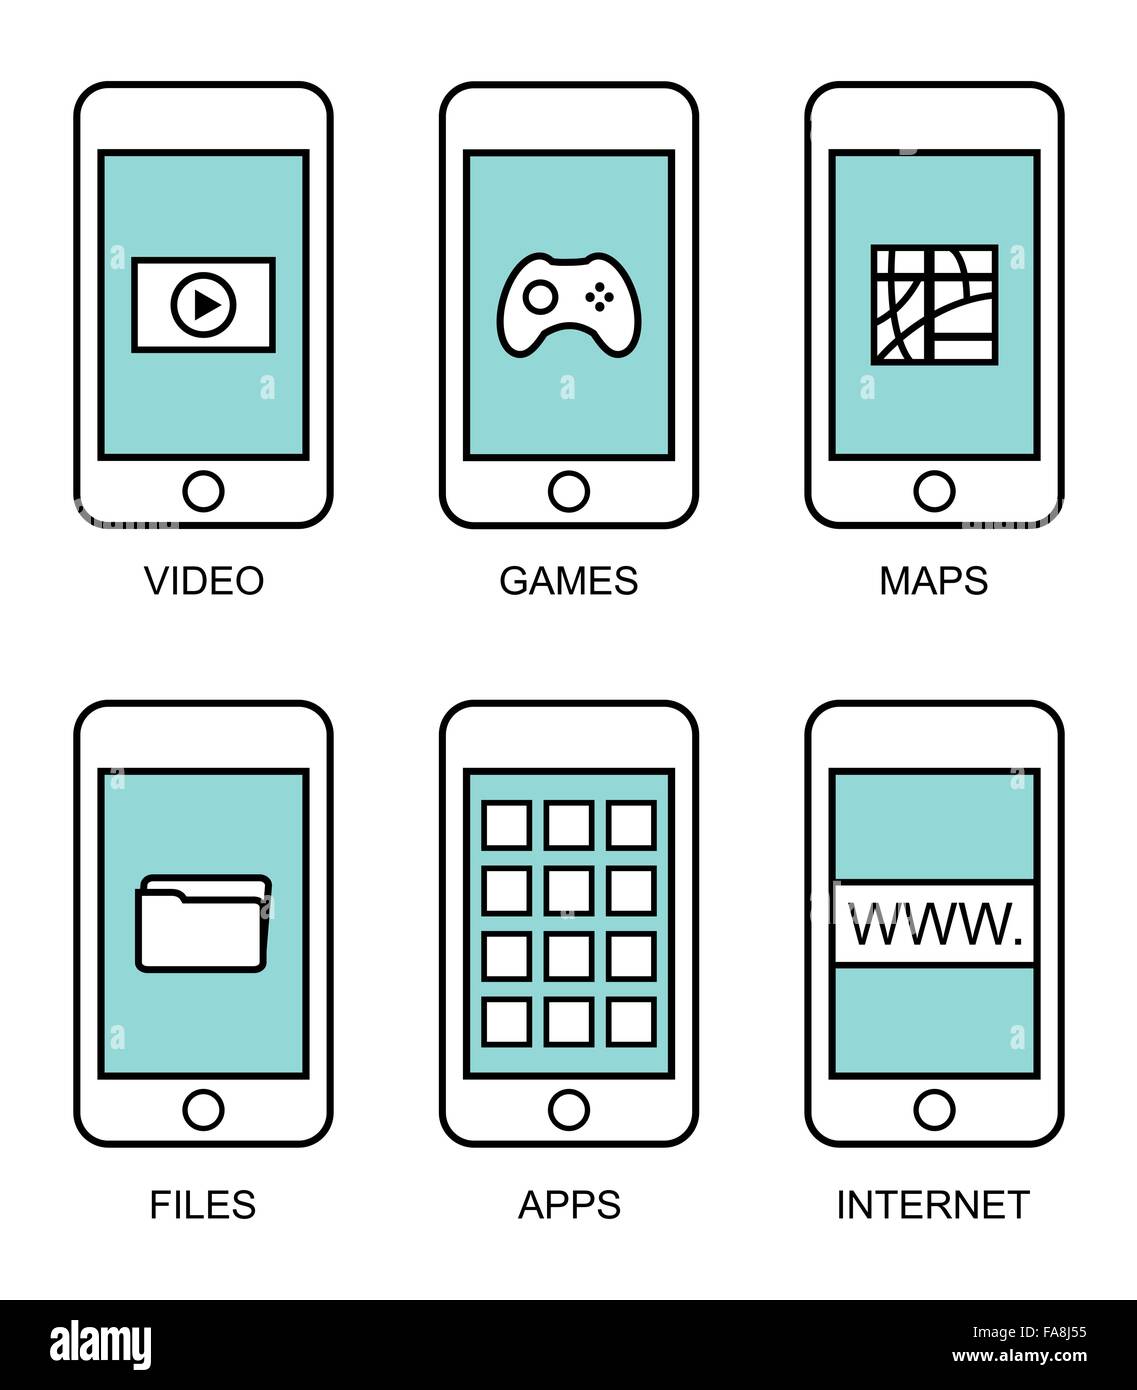 Flache Kontur moderne Smartphones mit verschiedenen Elementen der Benutzeroberfläche auf weißem Hintergrund Stock Vektor